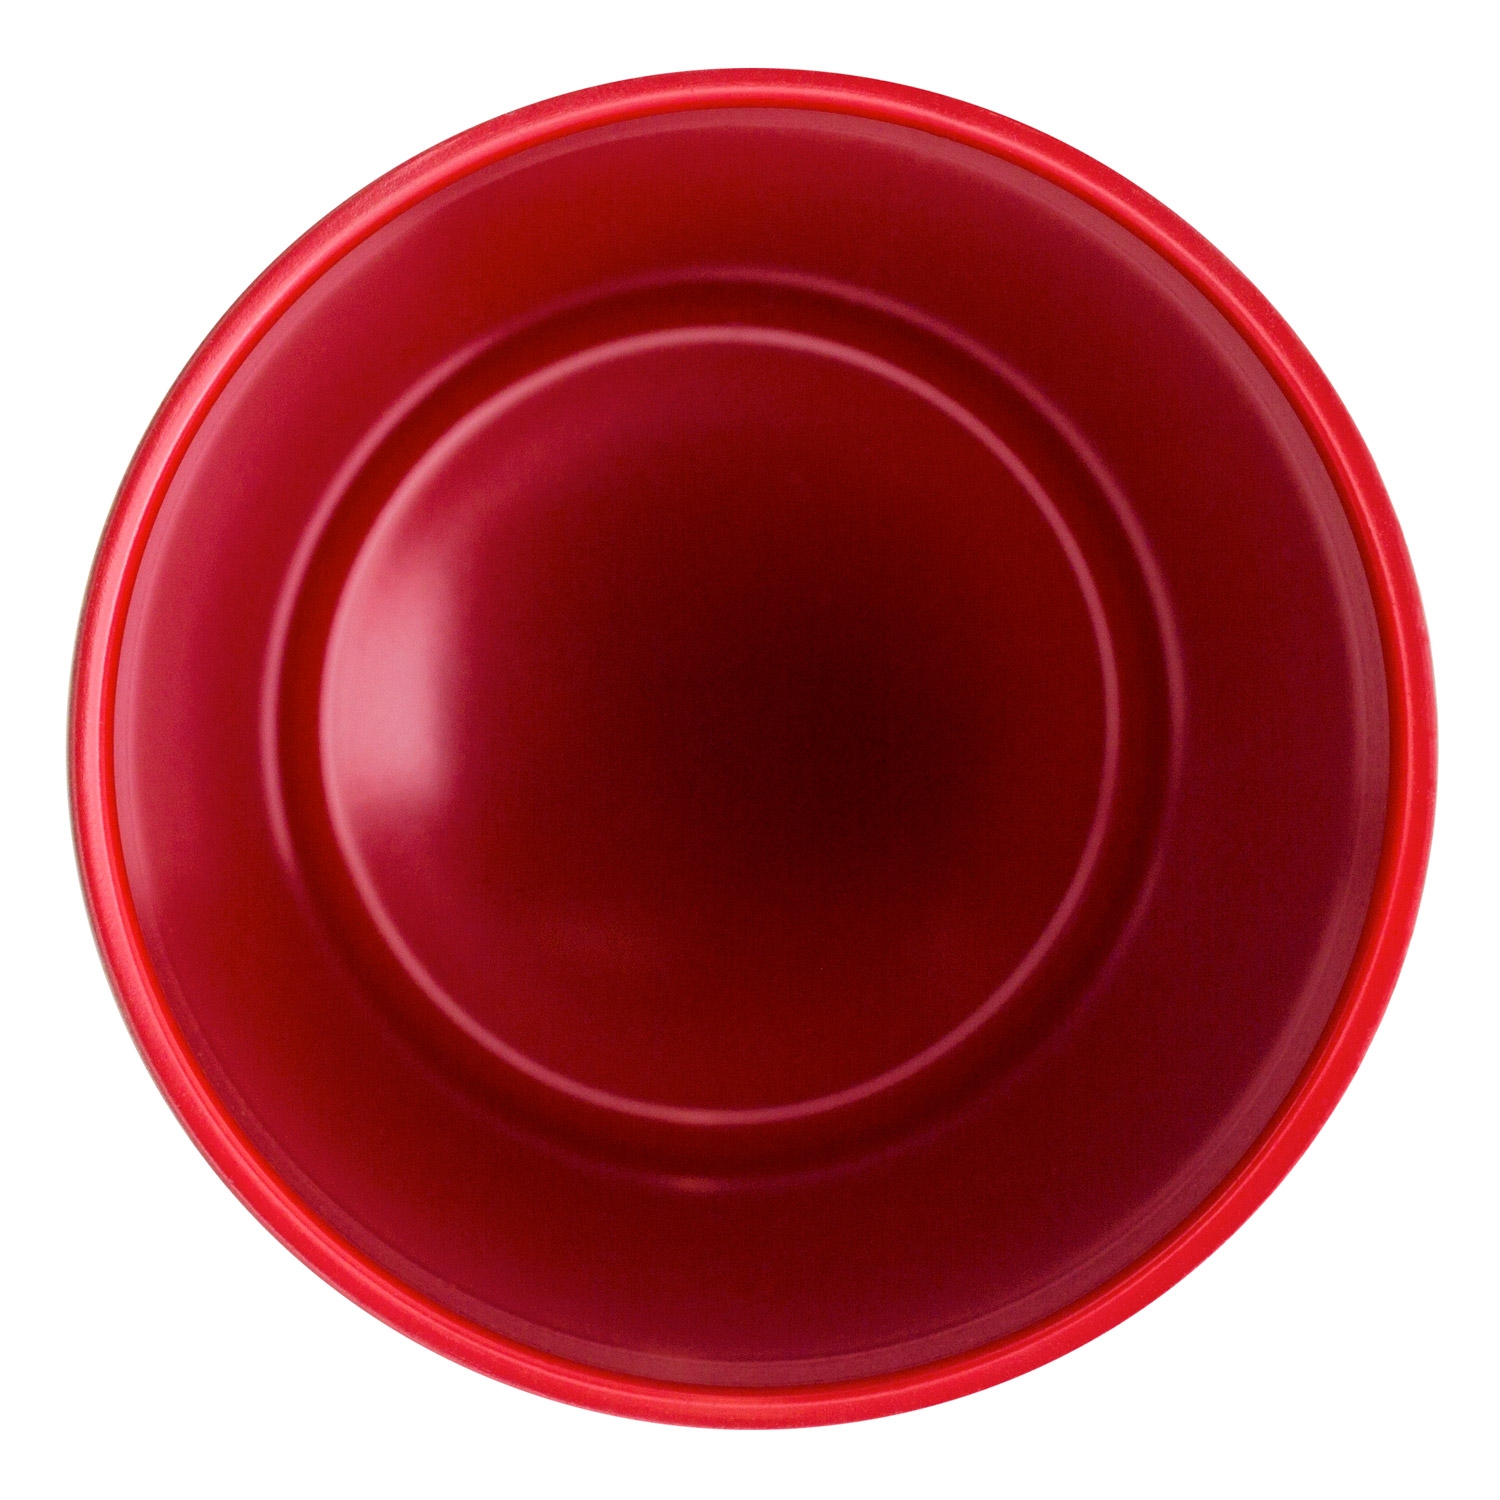 Термокружка вакуумная с керамическим покрытием Arctic, белый/красный, белый